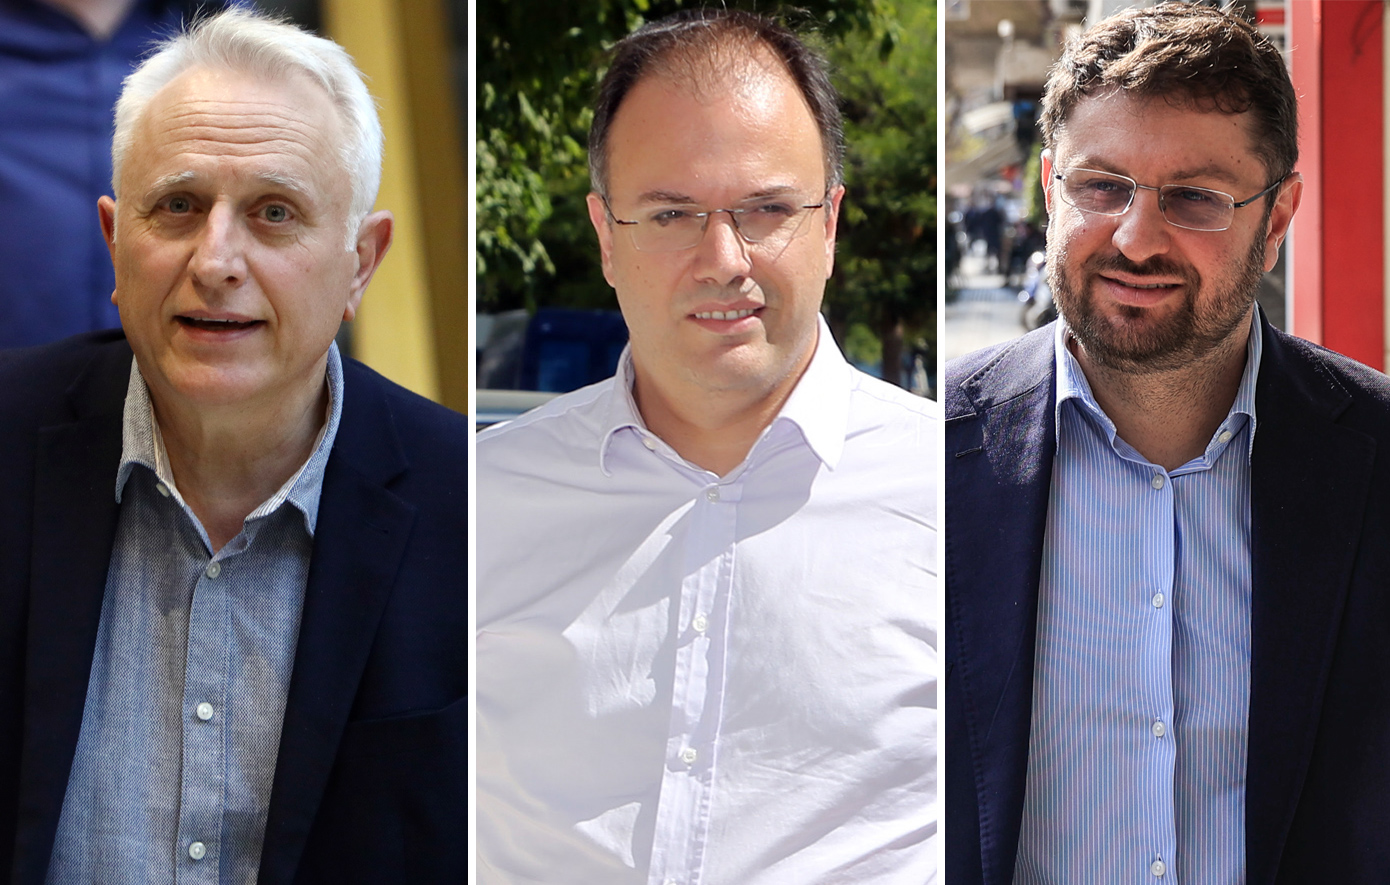 Δημοψήφισμα για την ανασύνθεση των δυνάμεων της Κεντροαριστεράς ζητούν Ραγκούσης, Θεοχαρόπουλος, Ζαχαριάδης